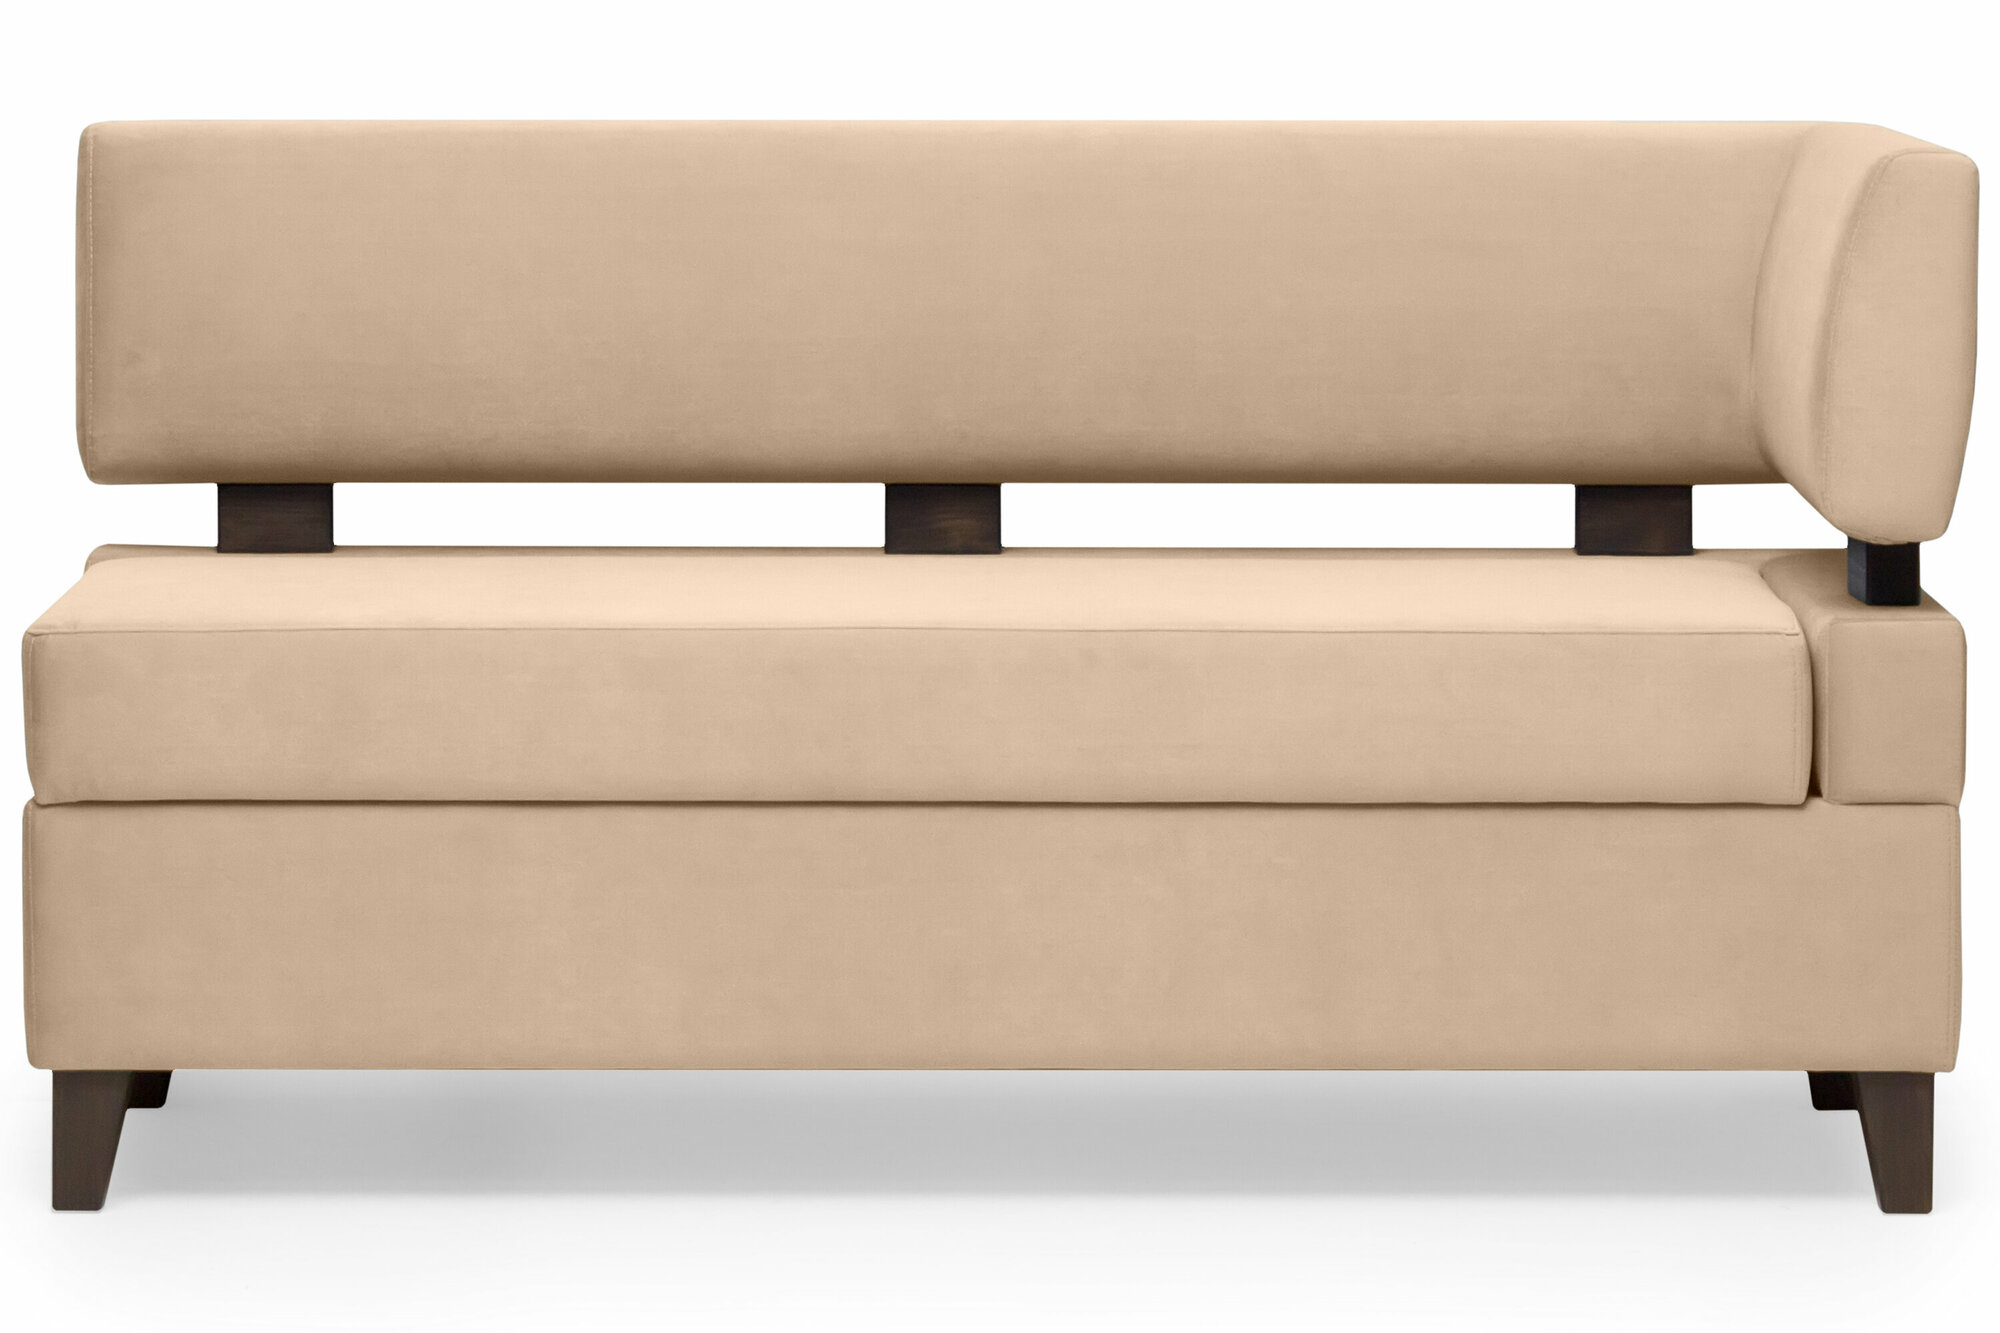 Прямой диван для кухни Свен 115 см с боковой спинкой и ящиком - бежевый, правый